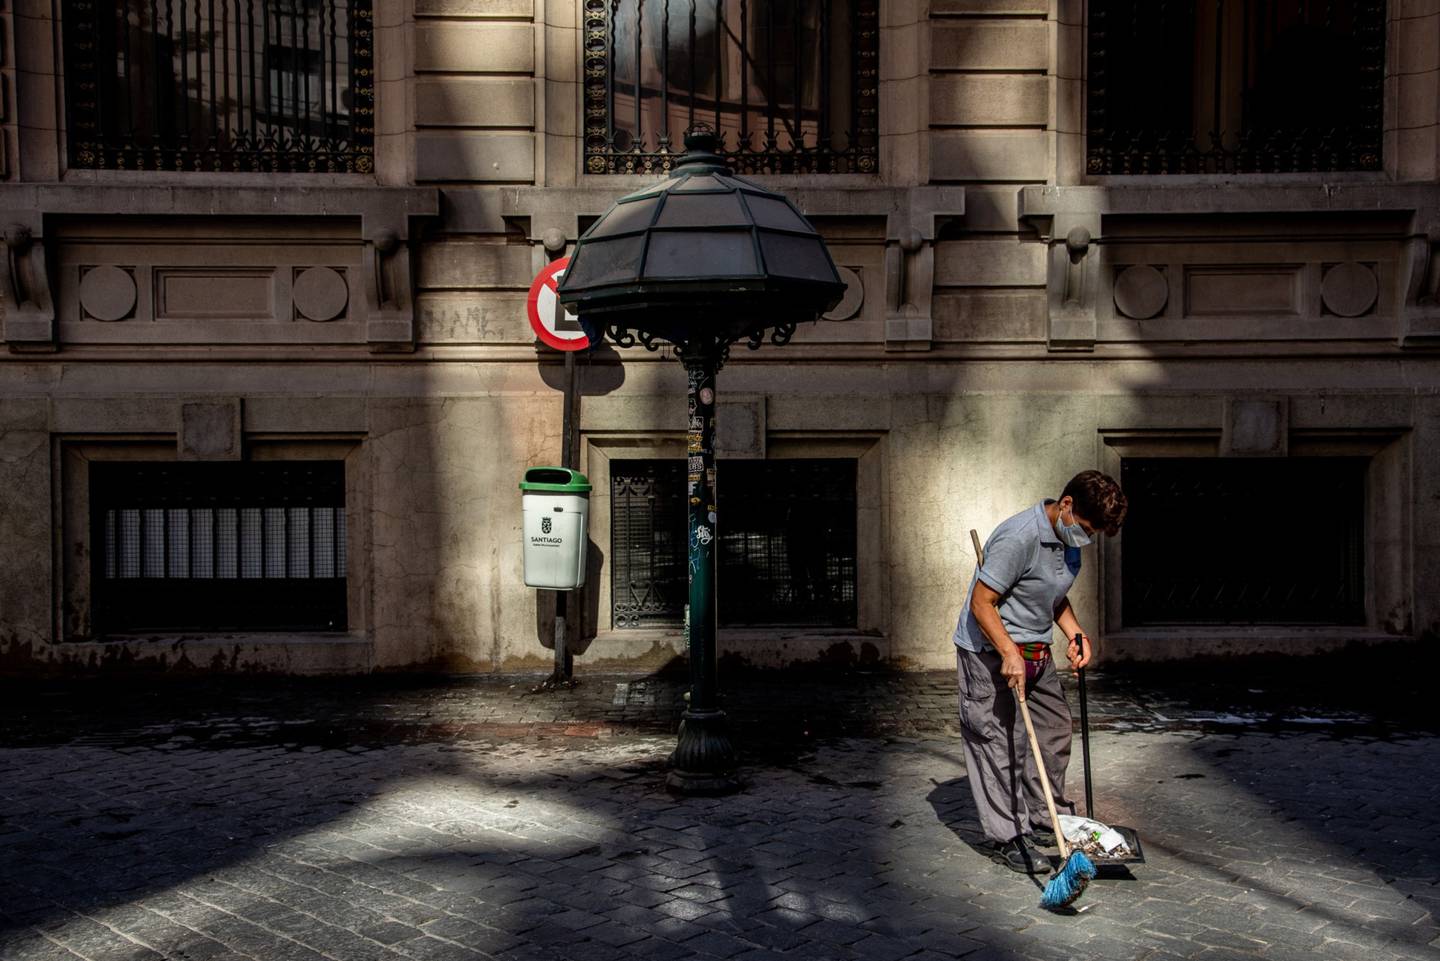 Un trabajador usa una máscara protectora mientras limpia una calle antes de una orden de cuarentena en Santiago, Chile, el jueves 26 de marzo de 2020. Fotógrafo: Cristobal Olivares/Bloomberg